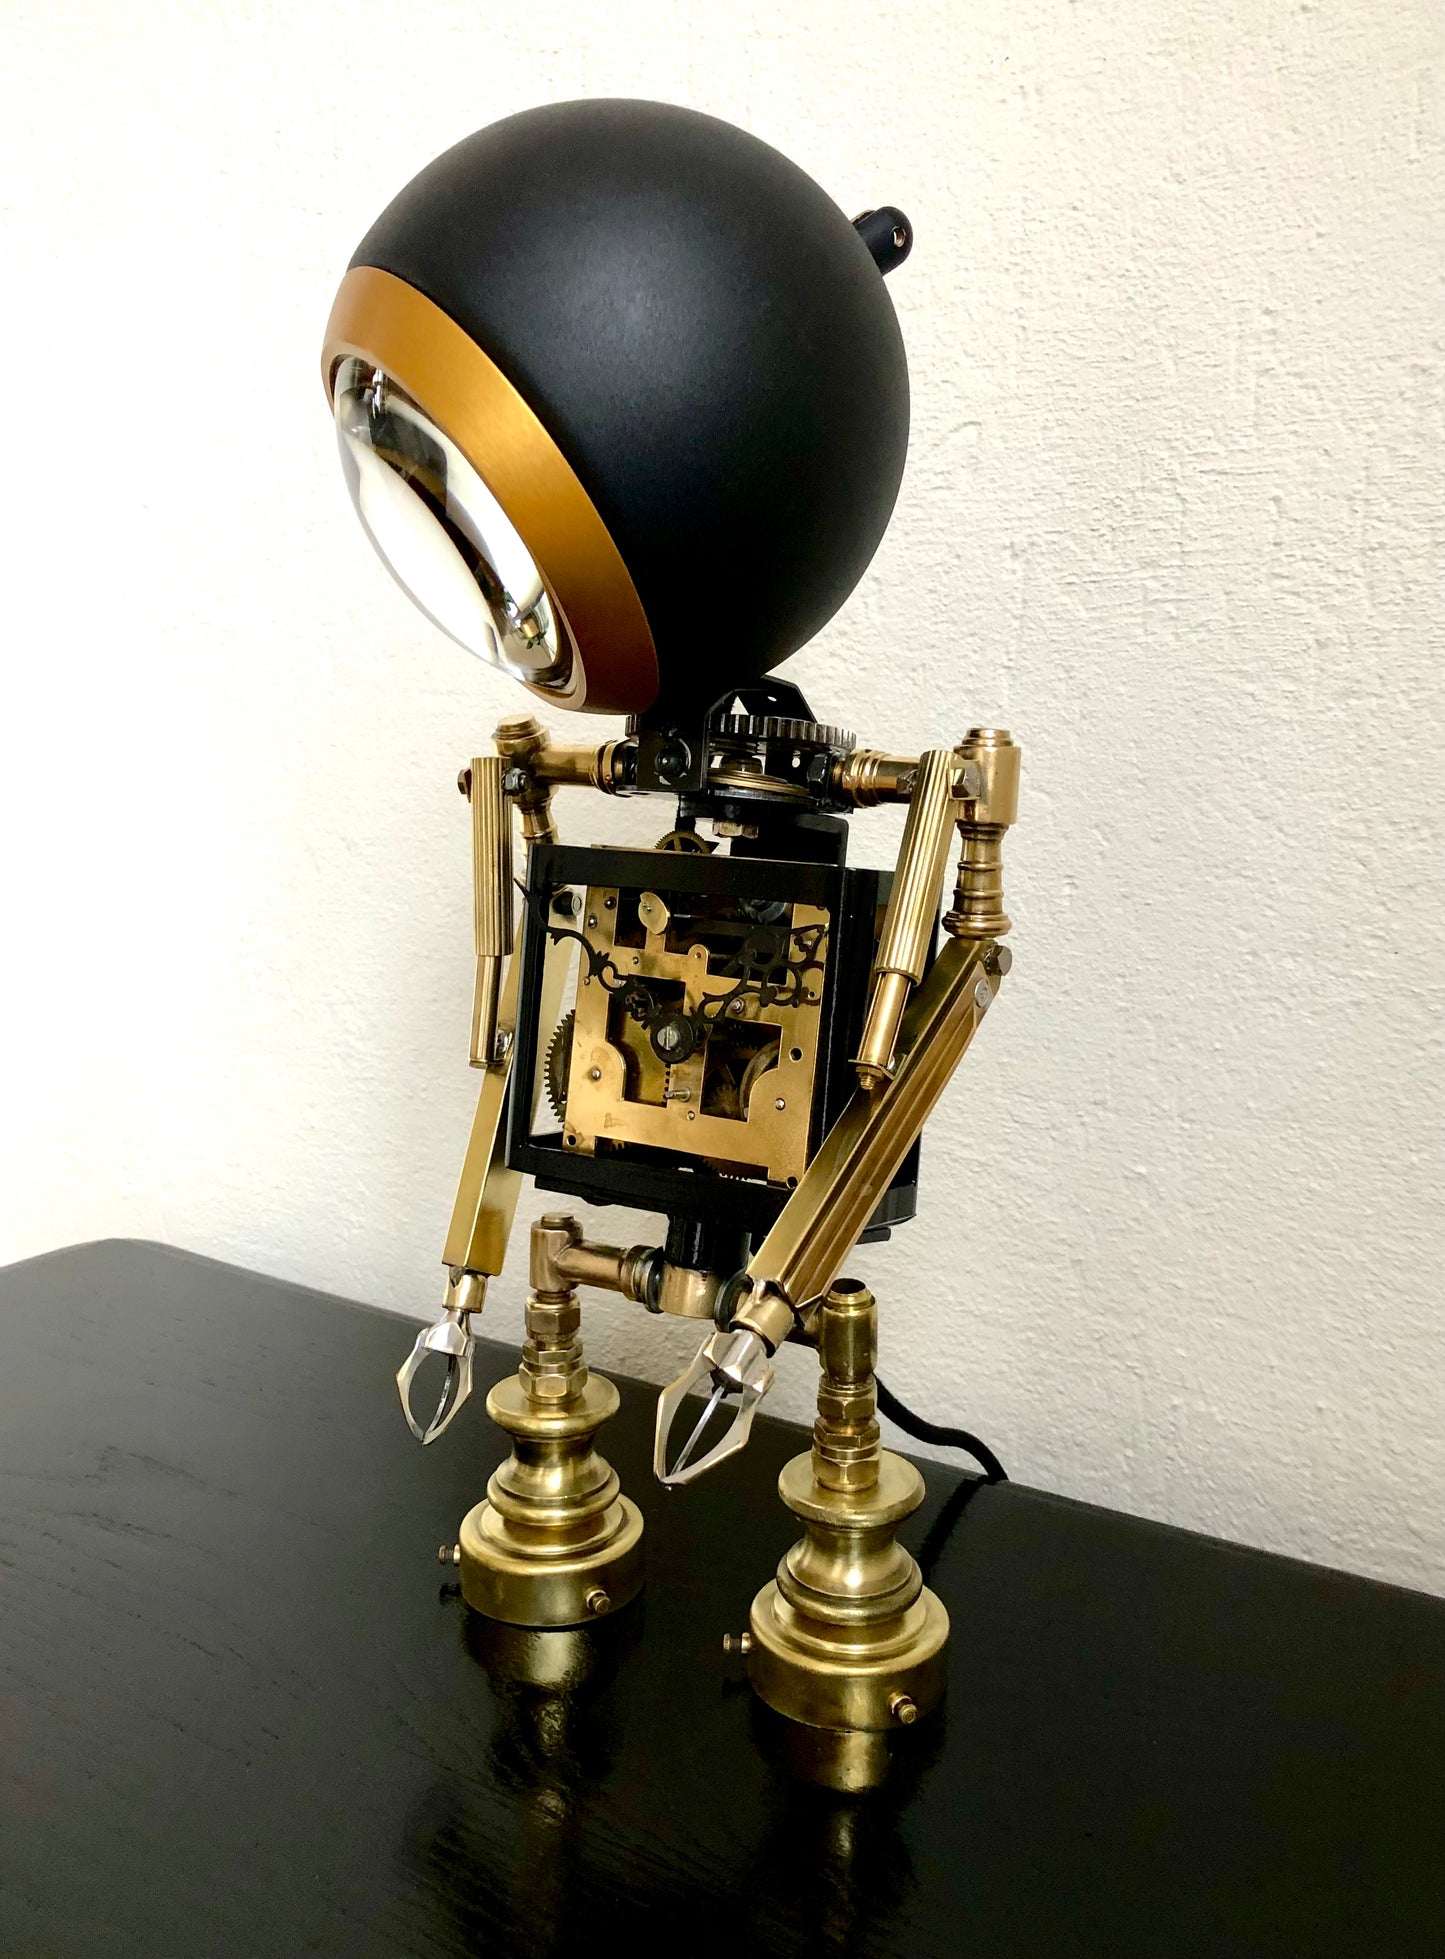 Marvin de depressieve robot lamp